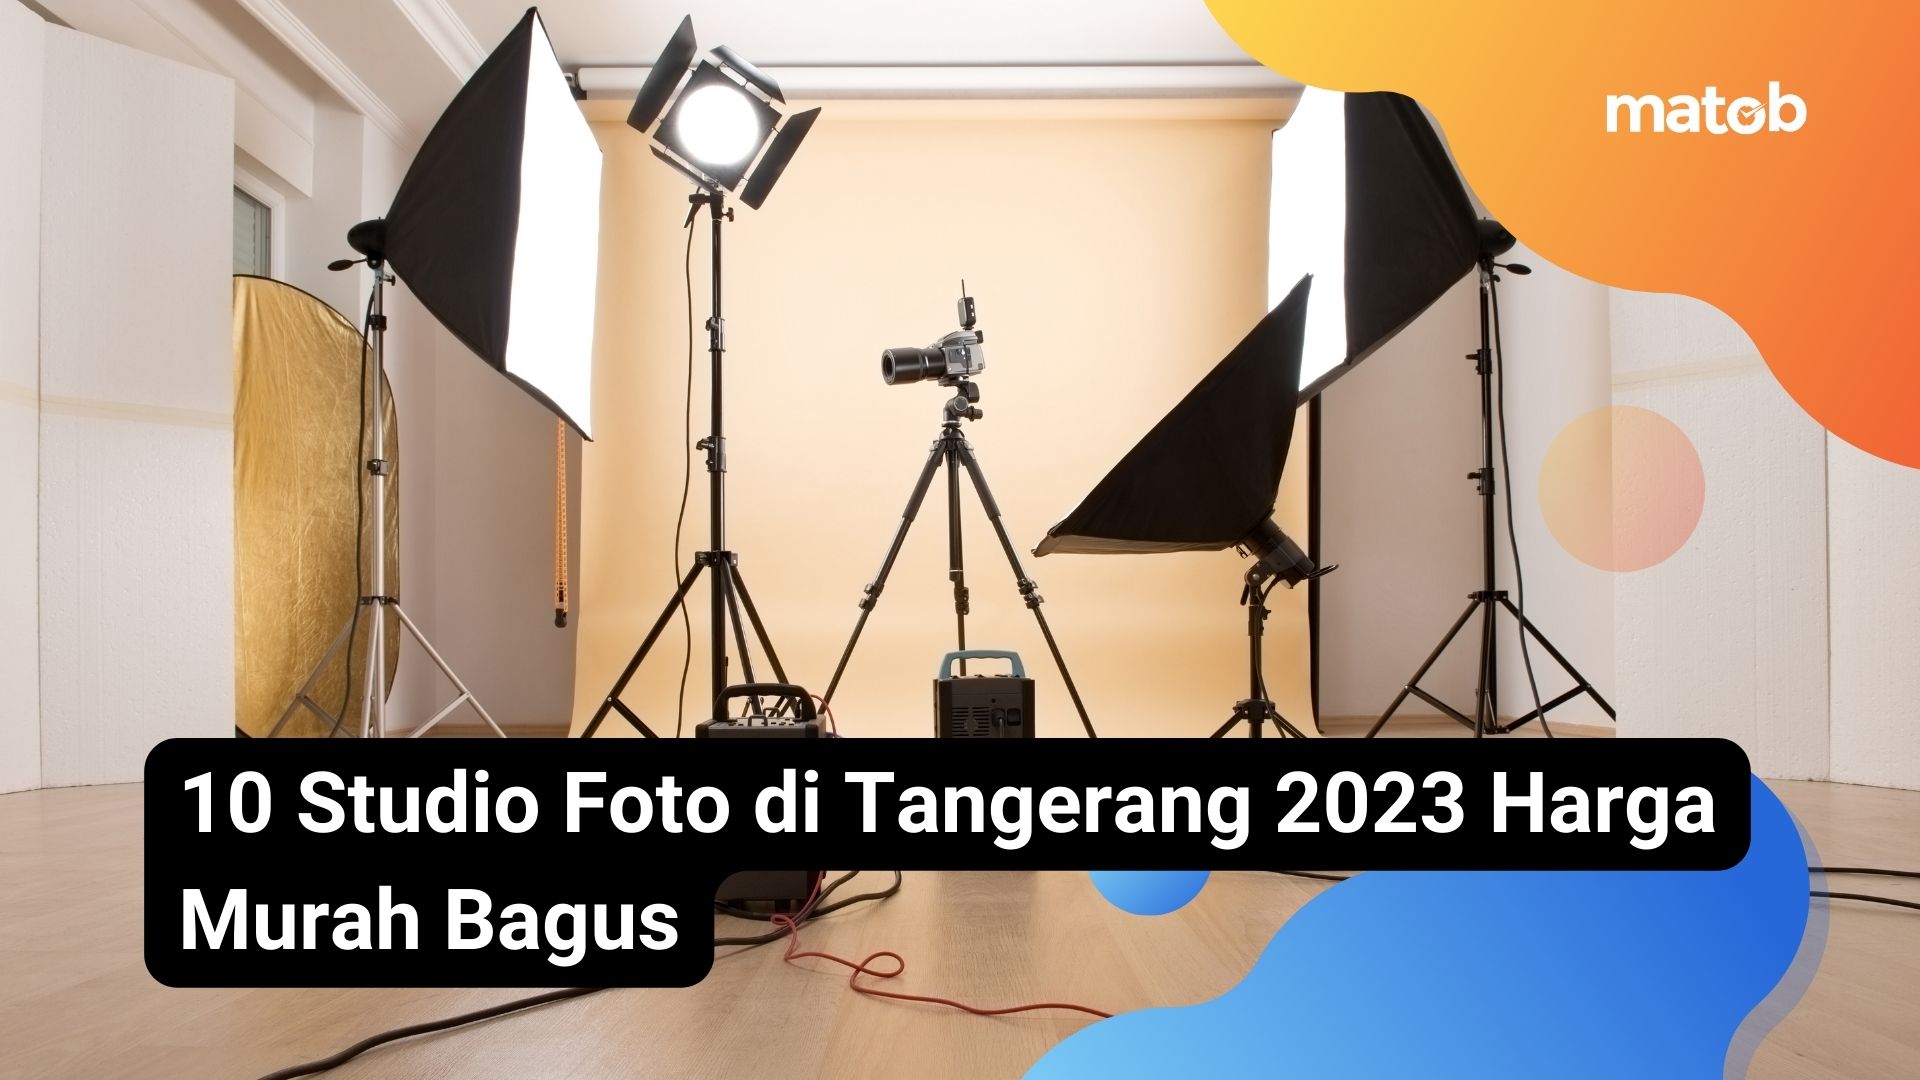 10 Studio Foto di Tangerang 2023 Harga Murah Bagus